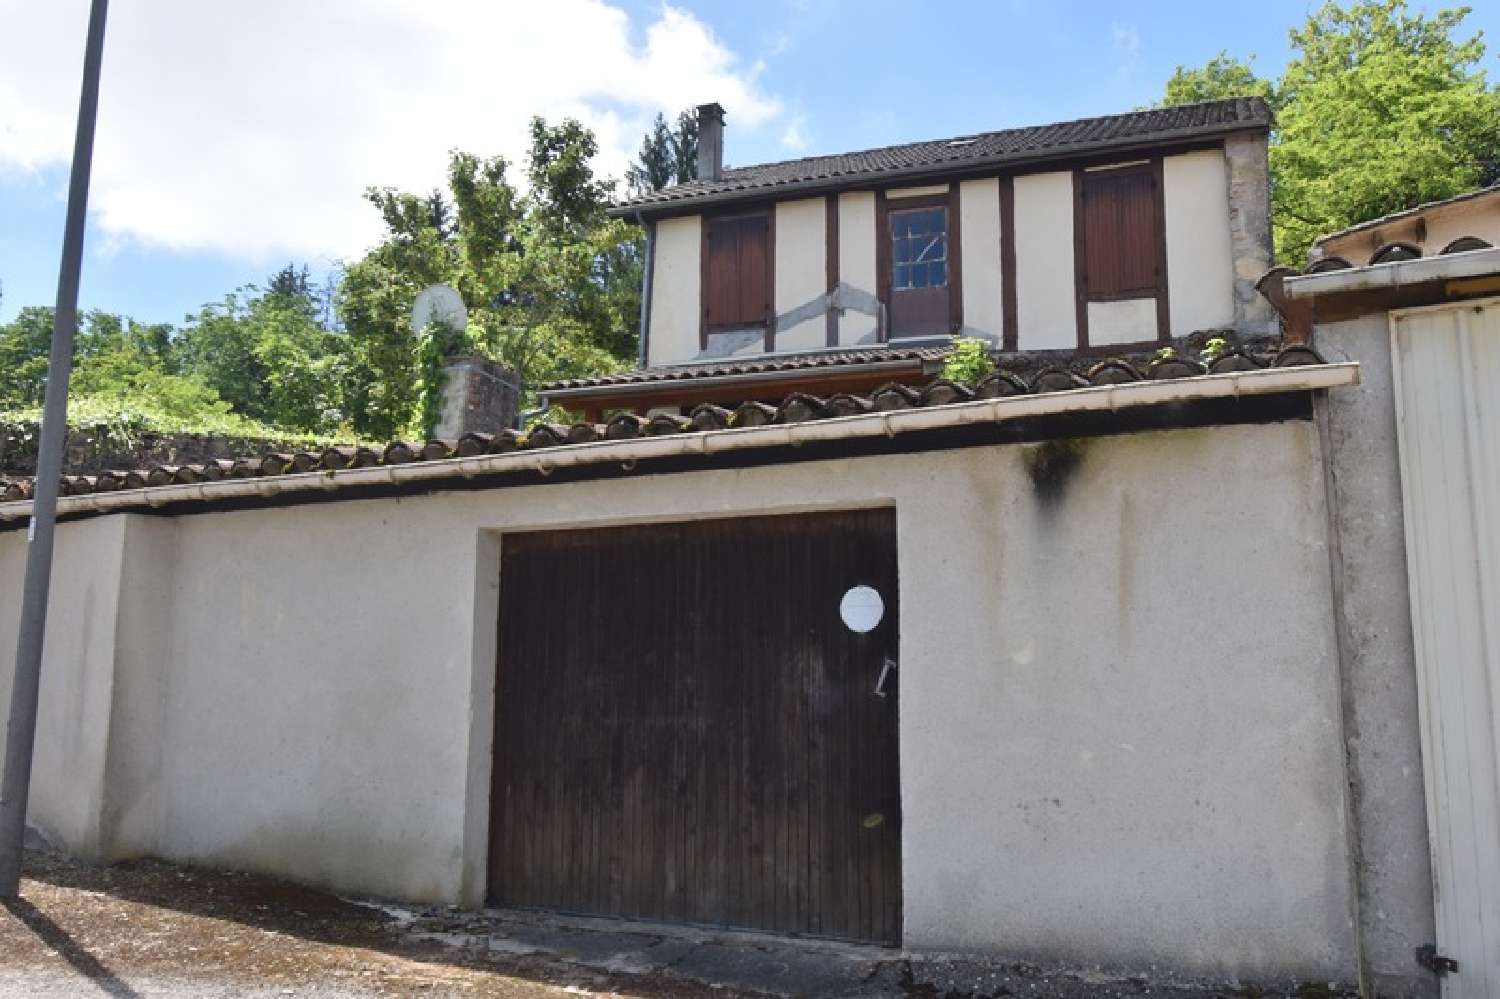  à vendre maison de village Tournon-d'Agenais Lot-et-Garonne 3